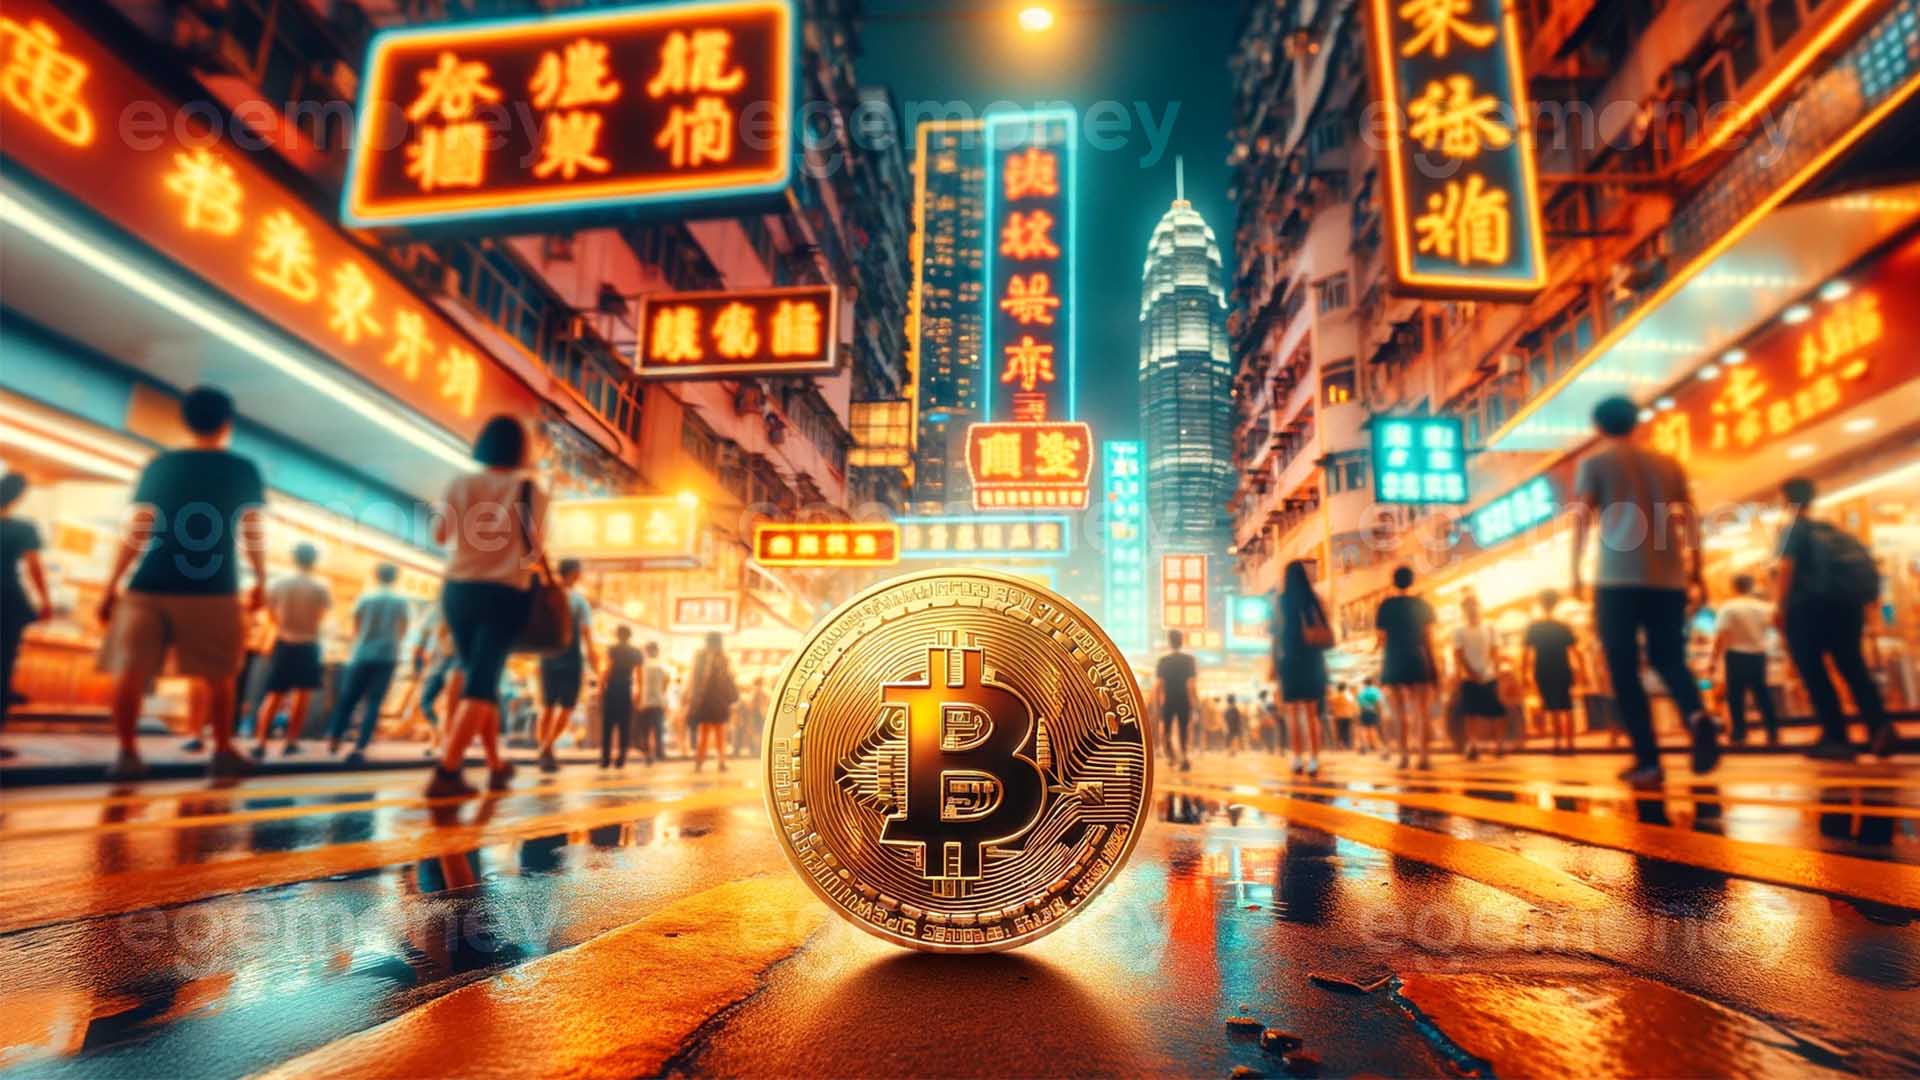 Hong Kong’da Bitcoin ETF’lerinin Piyasaya Sürülmesi Bekleniyor